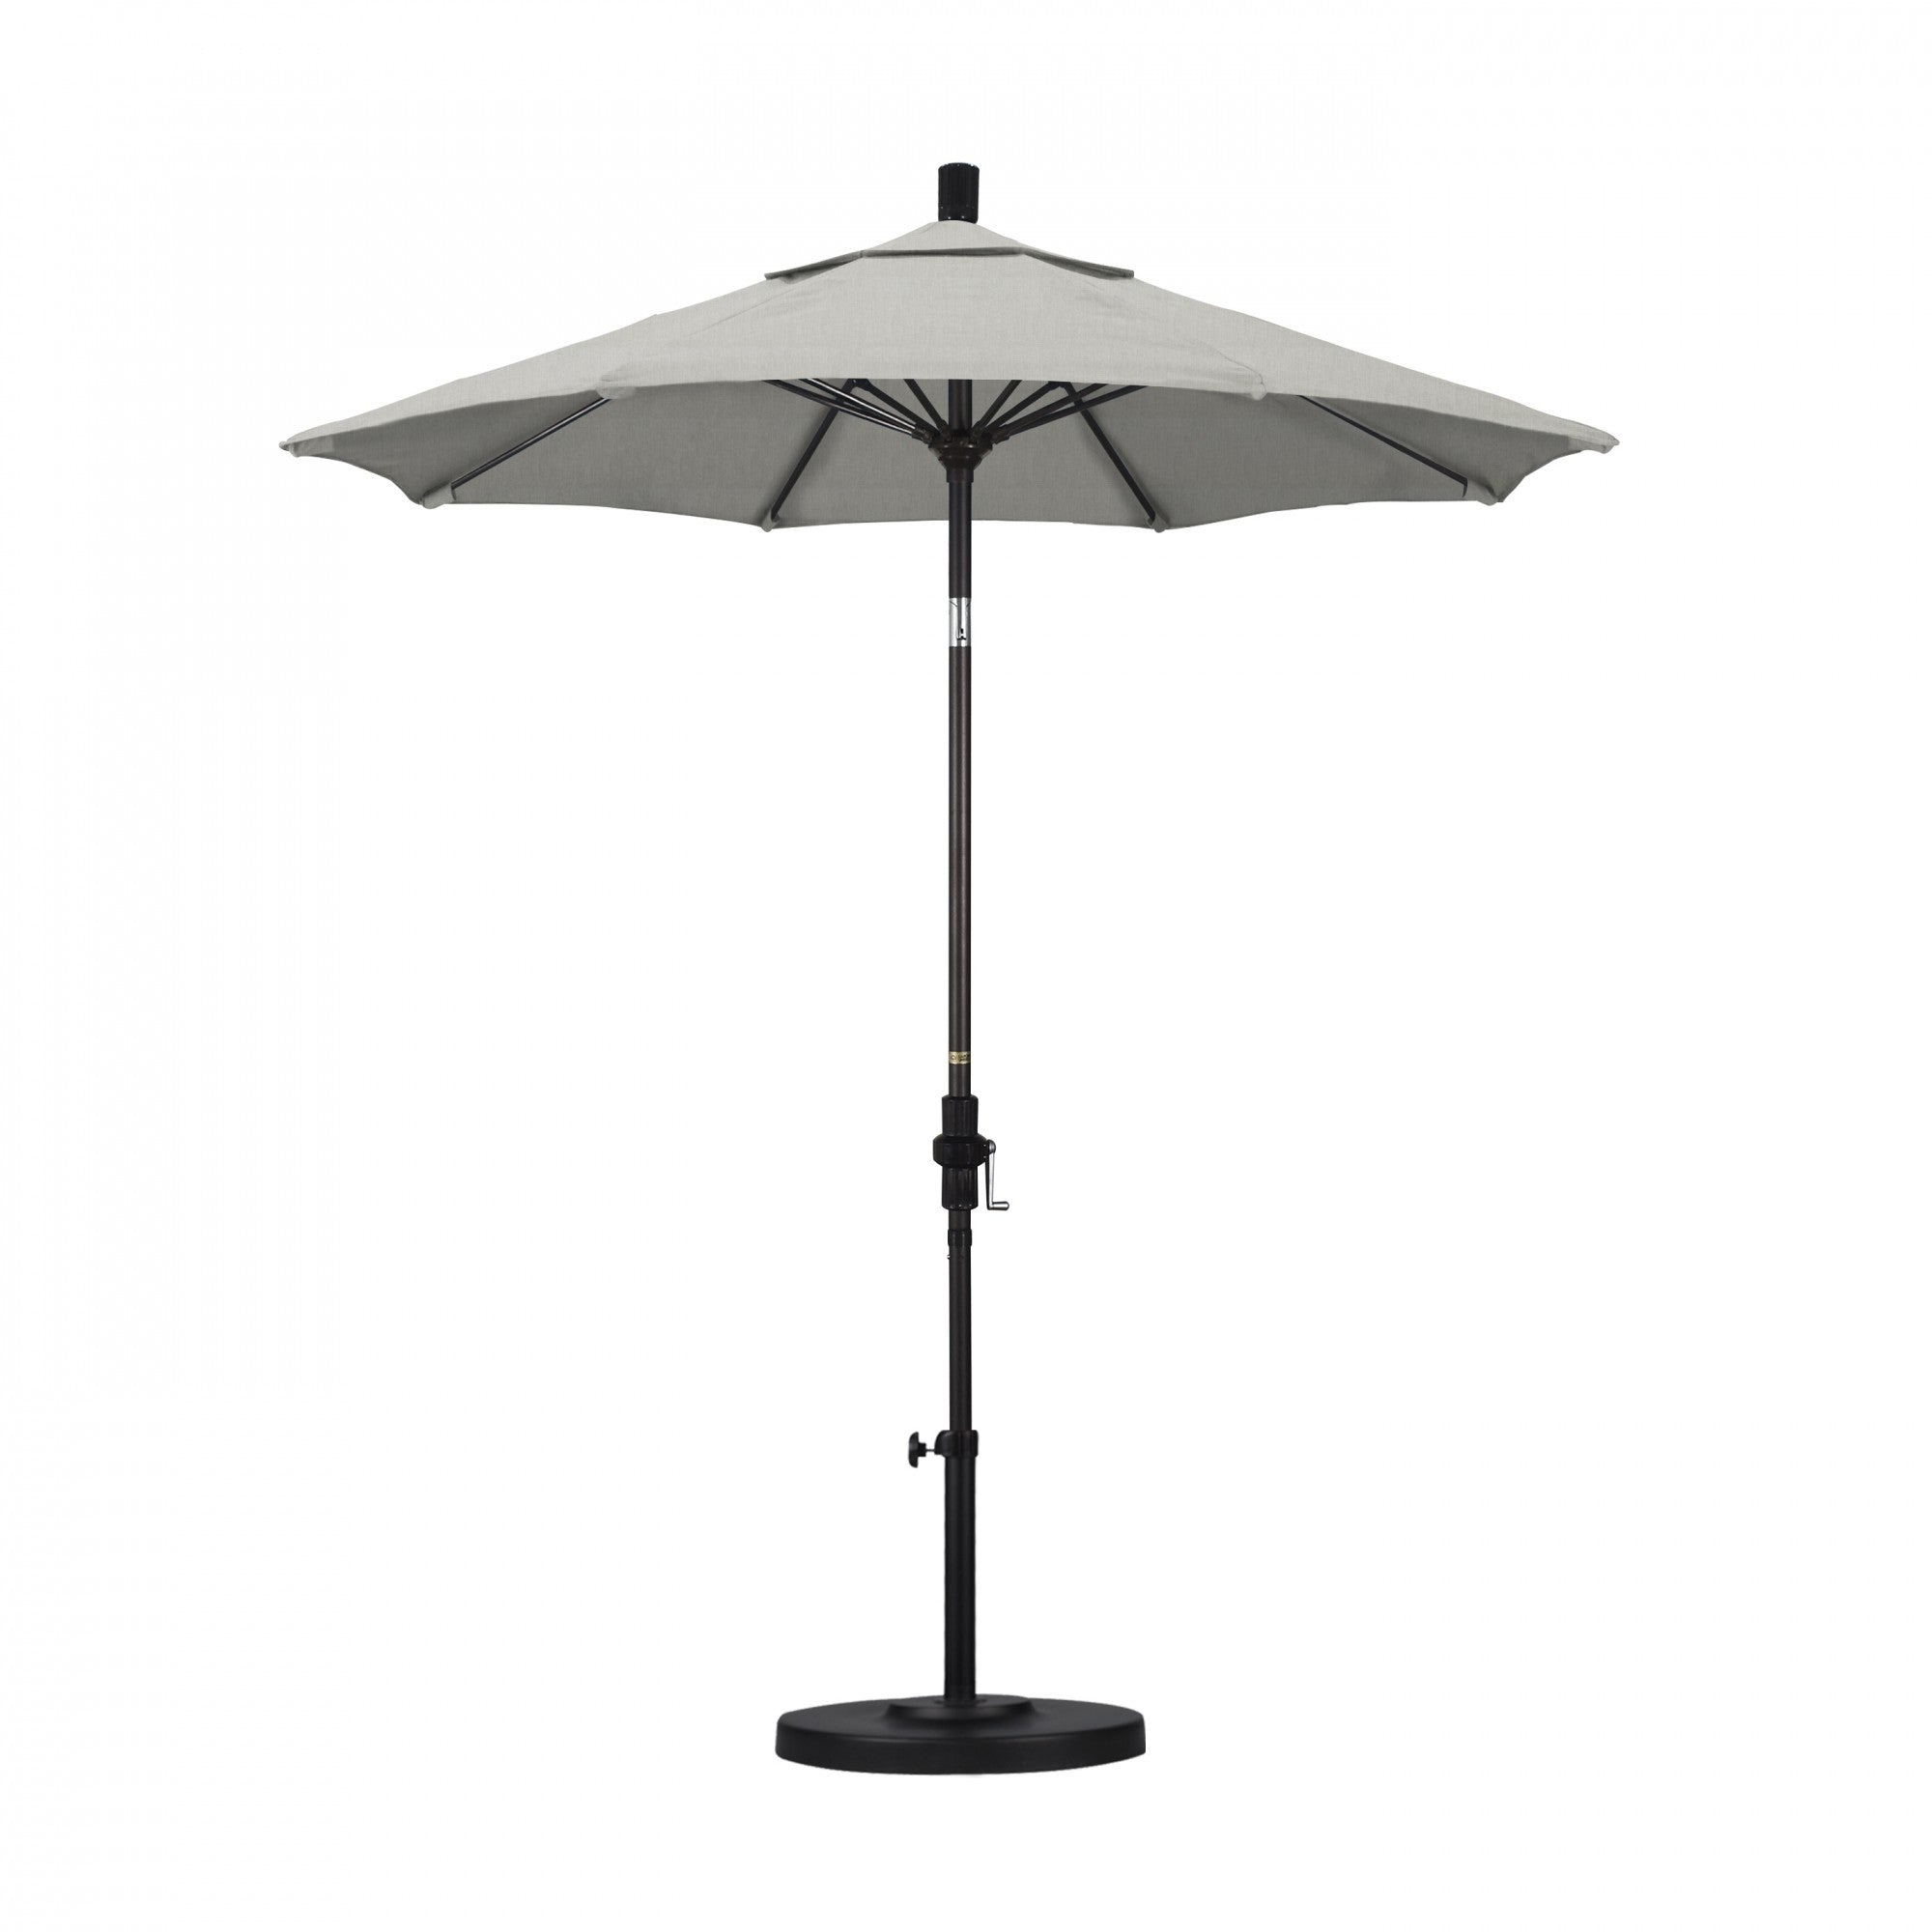 California Umbrella - 7.5' - Patio Umbrella Umbrella - Aluminum Pole - Granite - Sunbrella  - GSCUF758117-5402